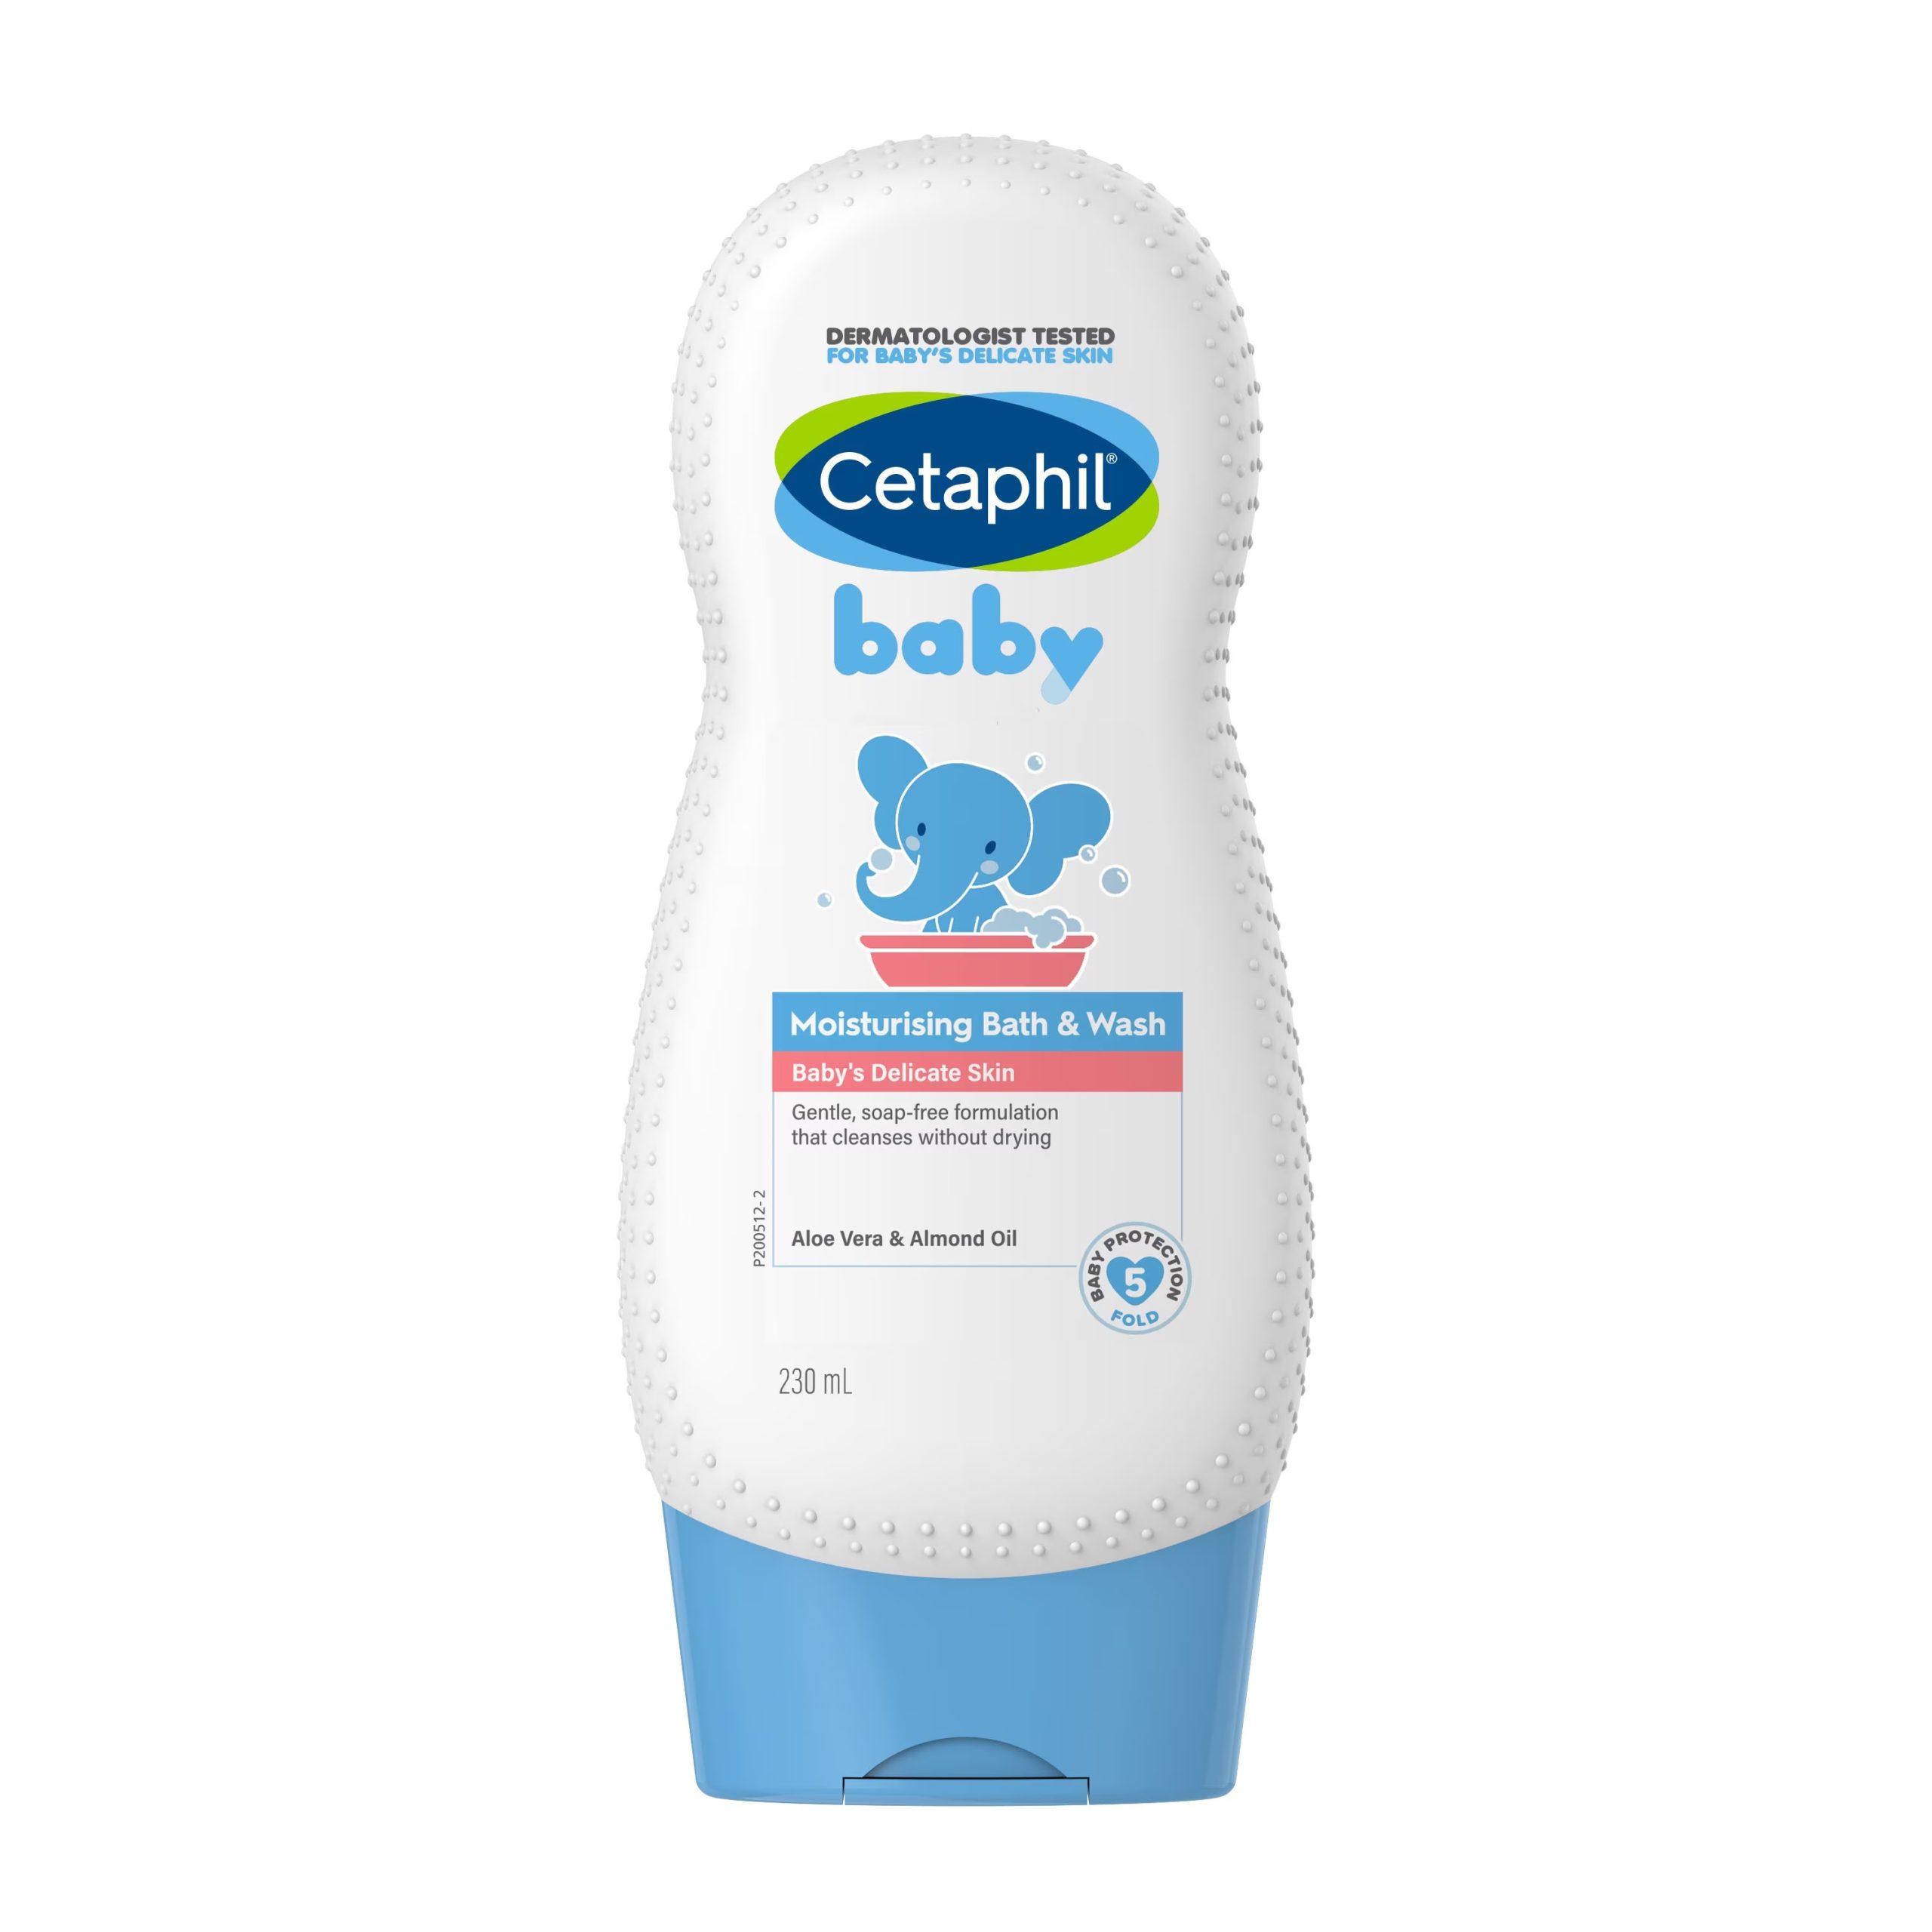 Cetaphil Baby Moisturising Bath & Wash